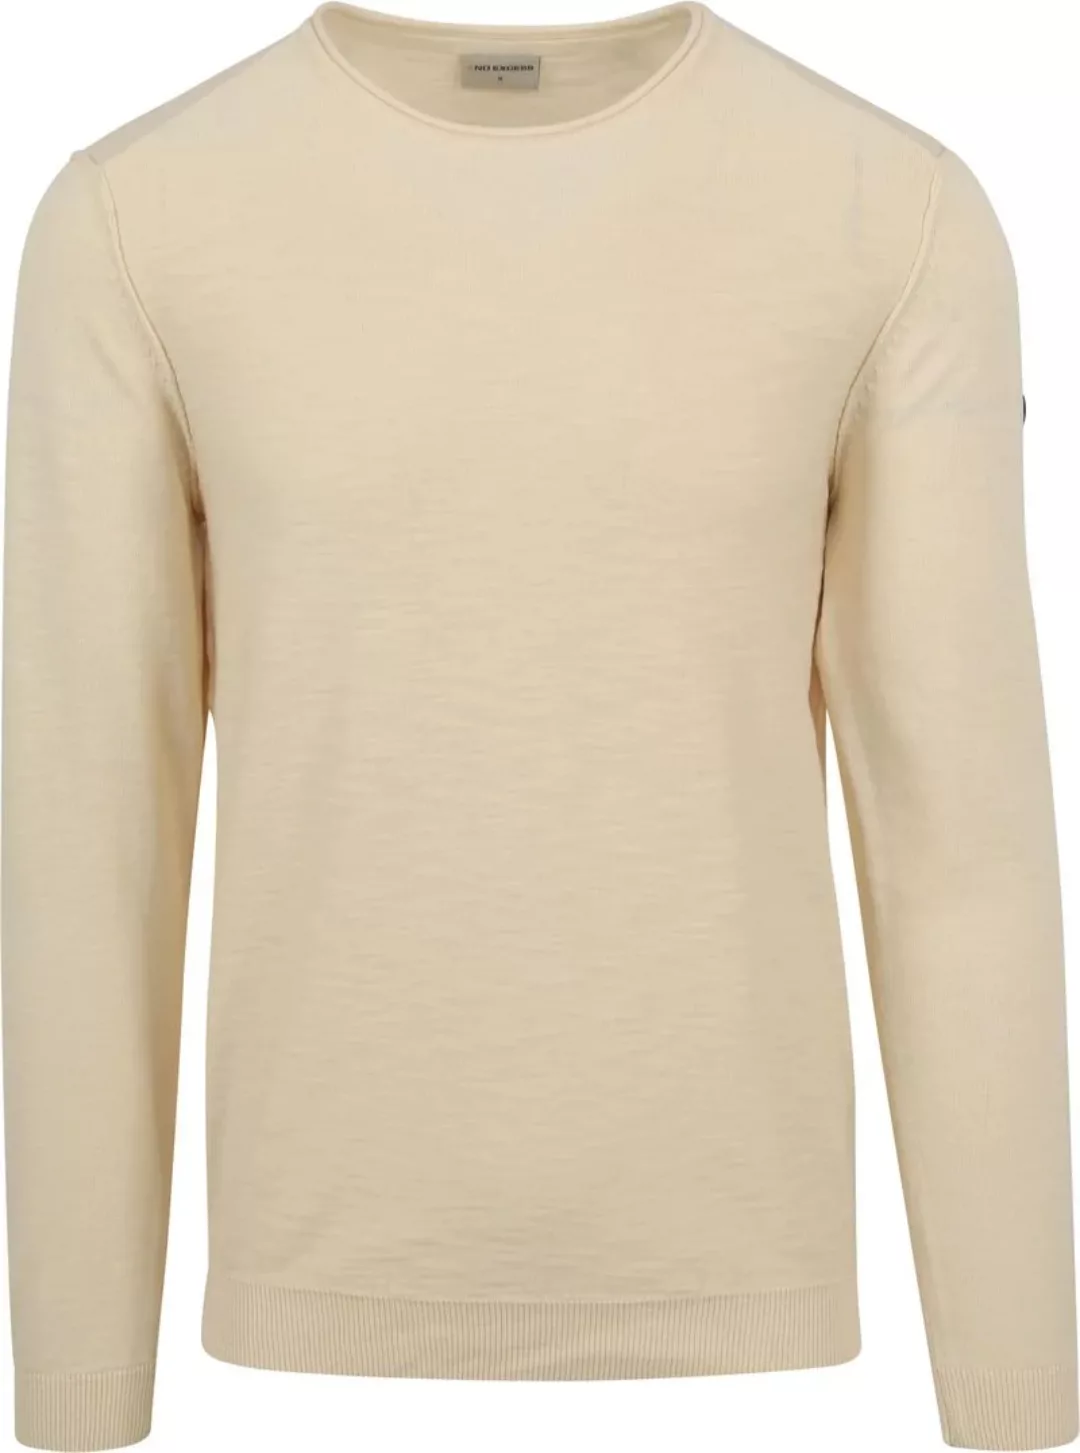 NO EXCESS Sweatshirt Pullover Crewneck Garment Dyed + St günstig online kaufen